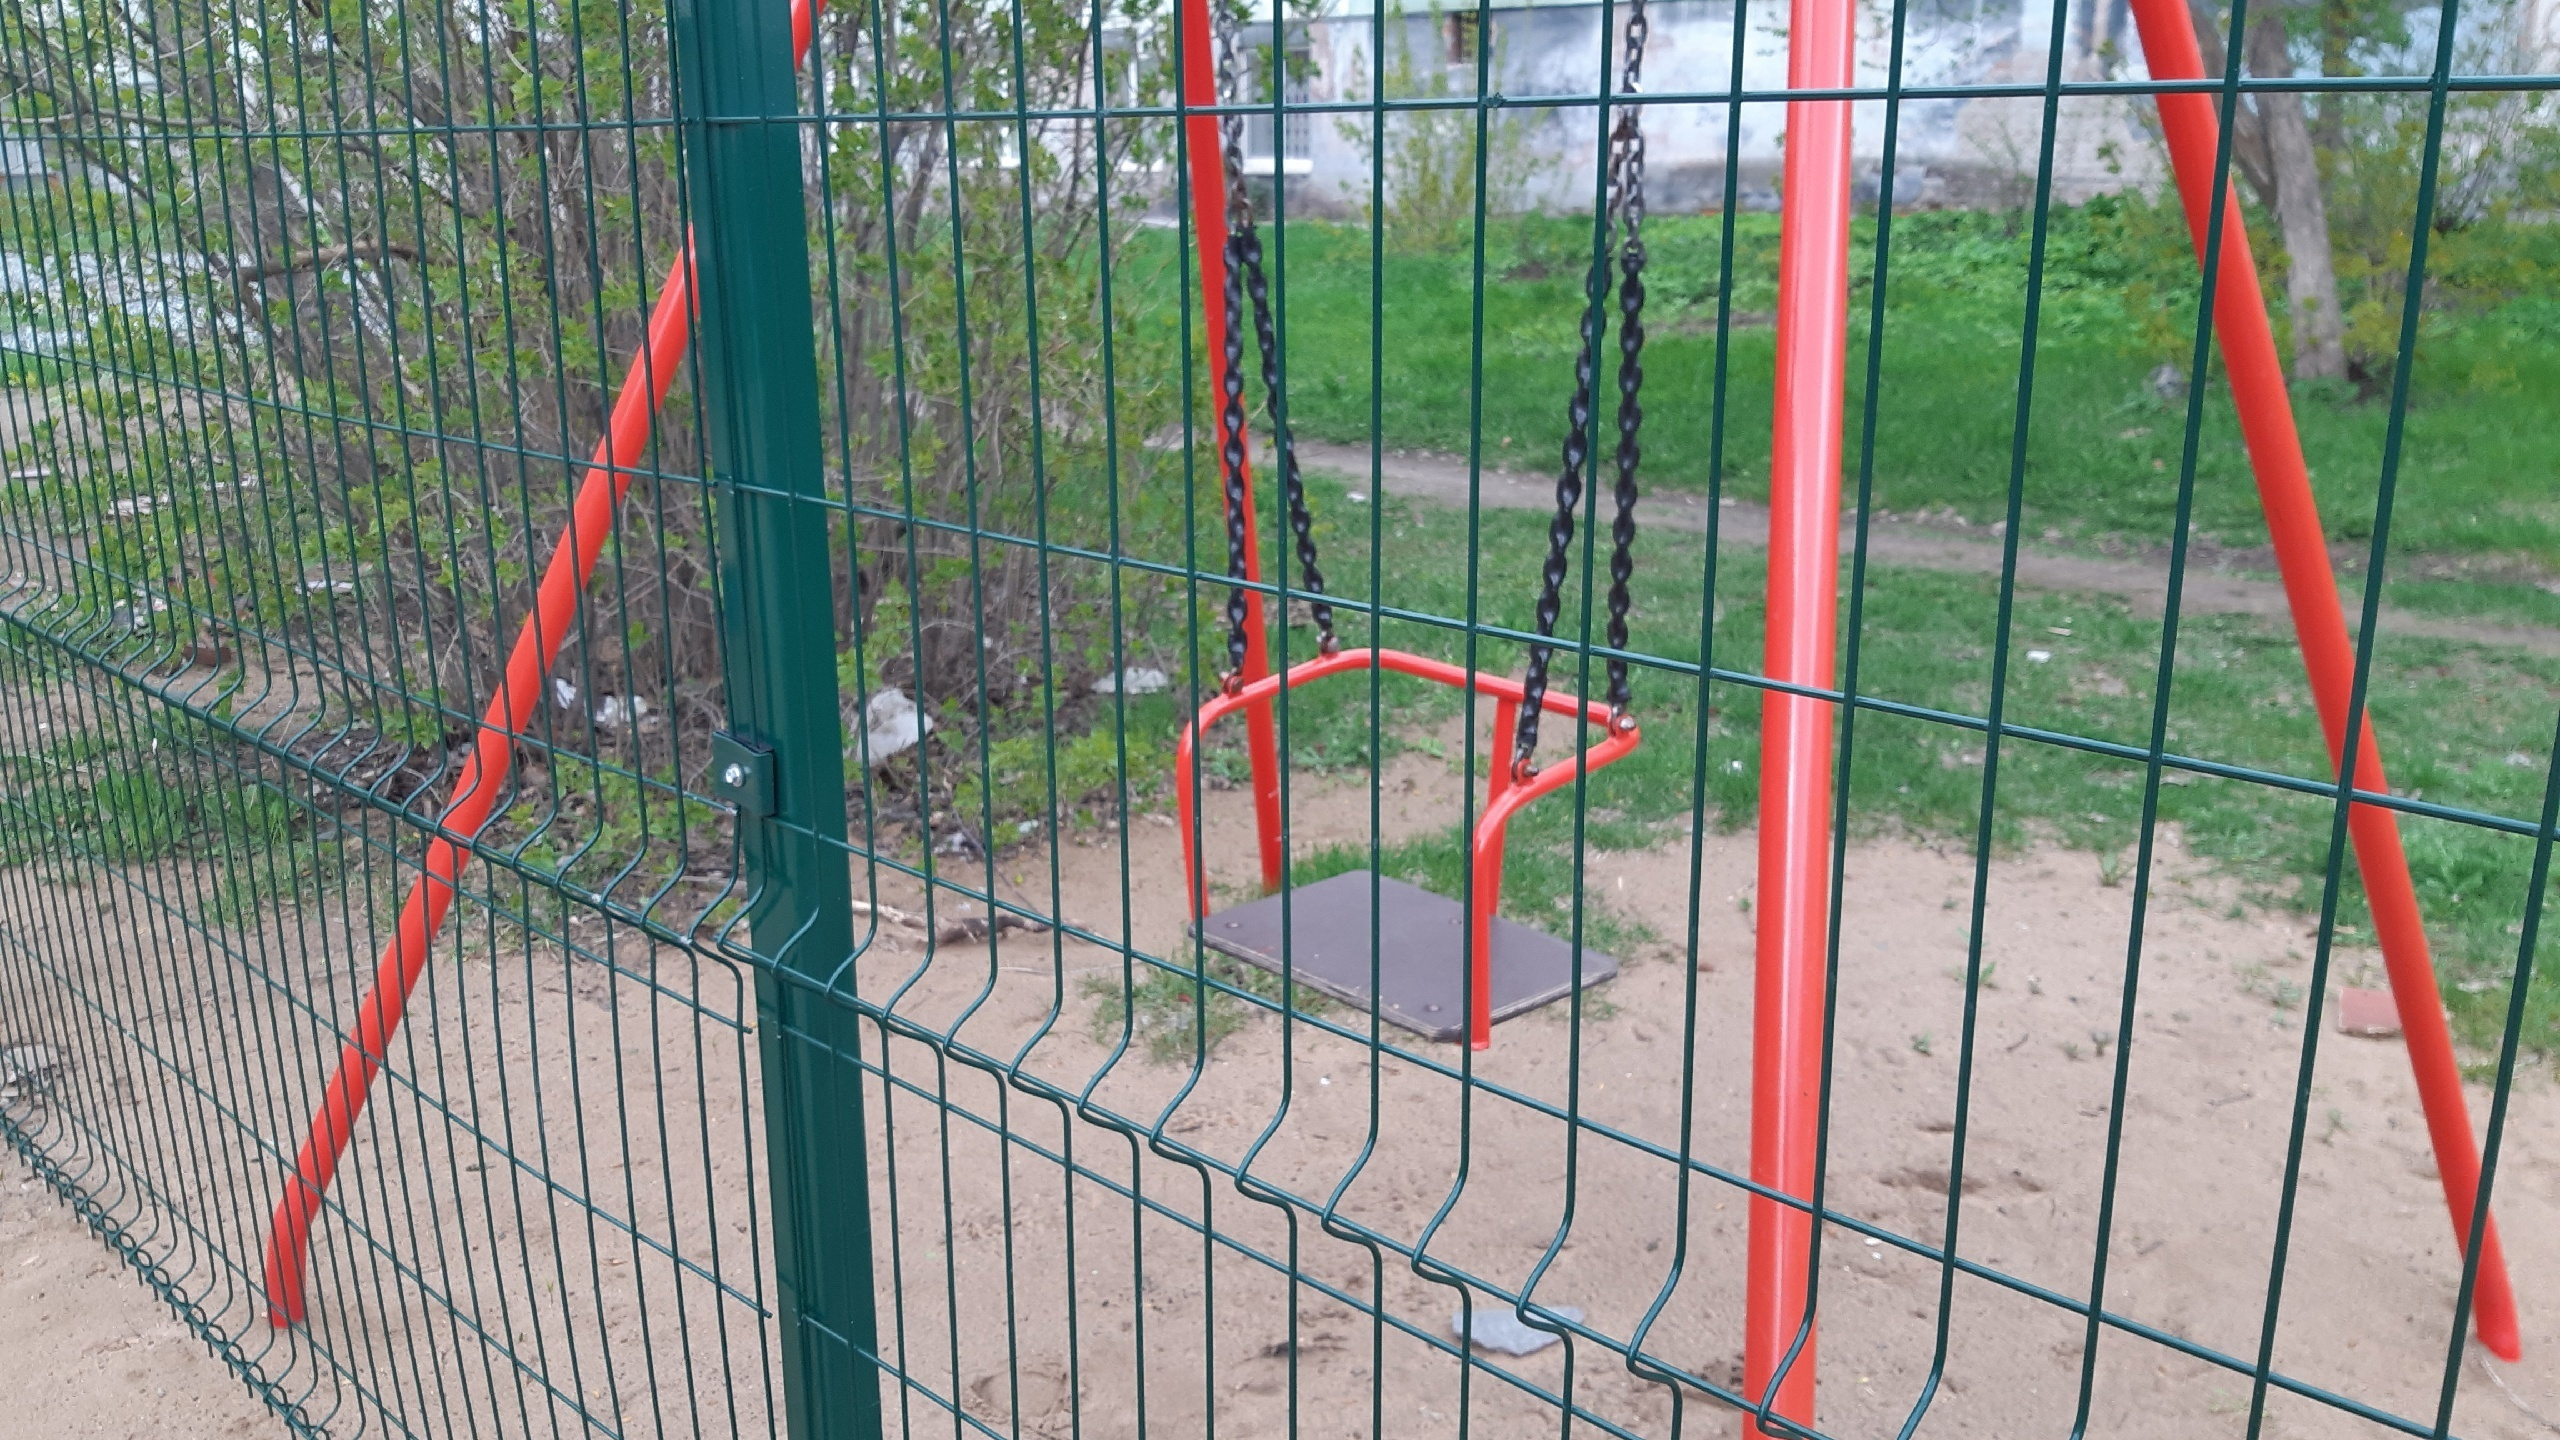 За решеткой: в Перми забор поставили так близко к качели, что теперь ей невозможно пользоваться